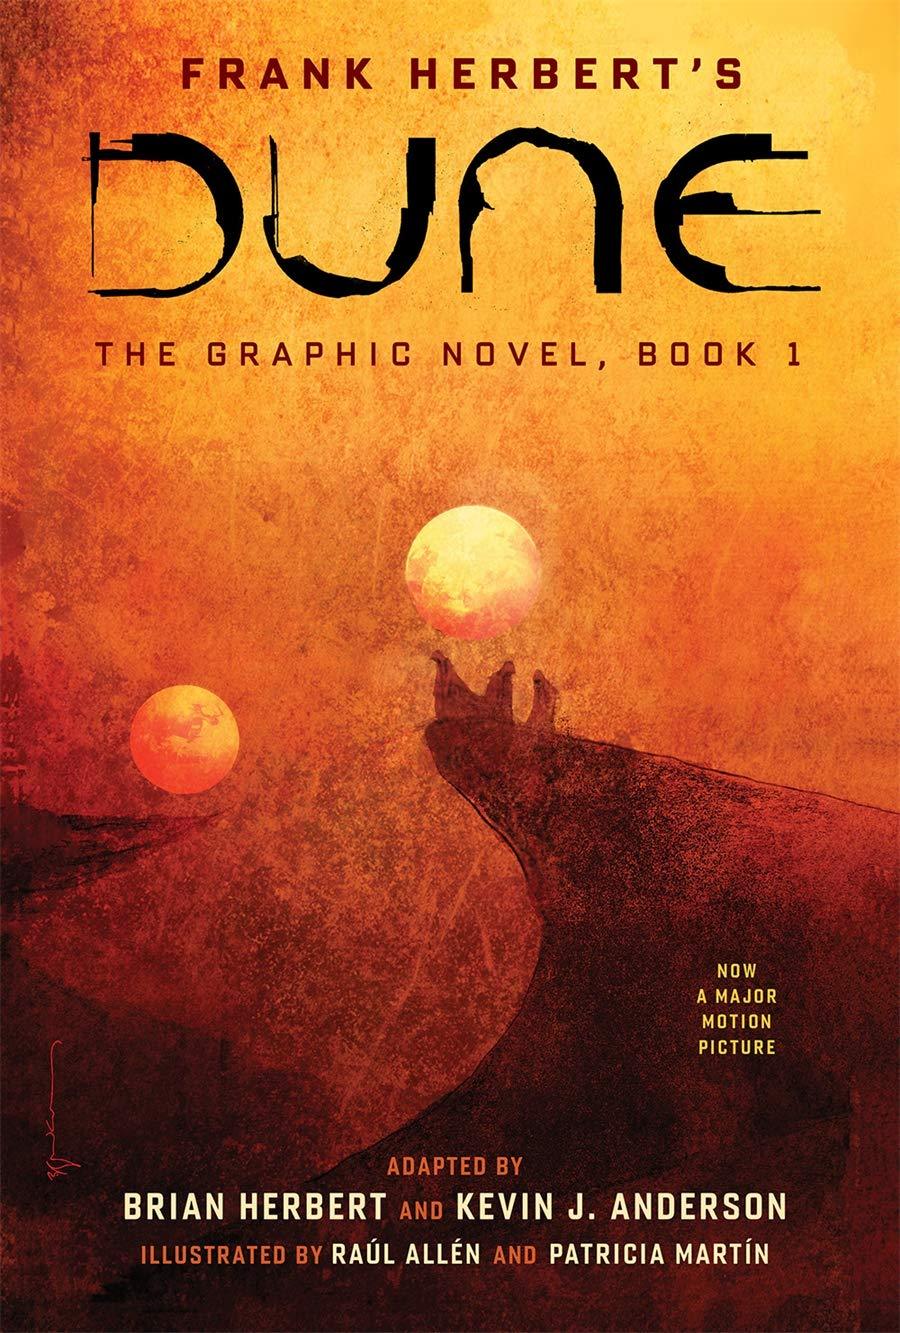 Dune: Book 1 (Dune: The Graphic Novel #1) by Frank Herbert [Hardcover] - LV'S Global Media